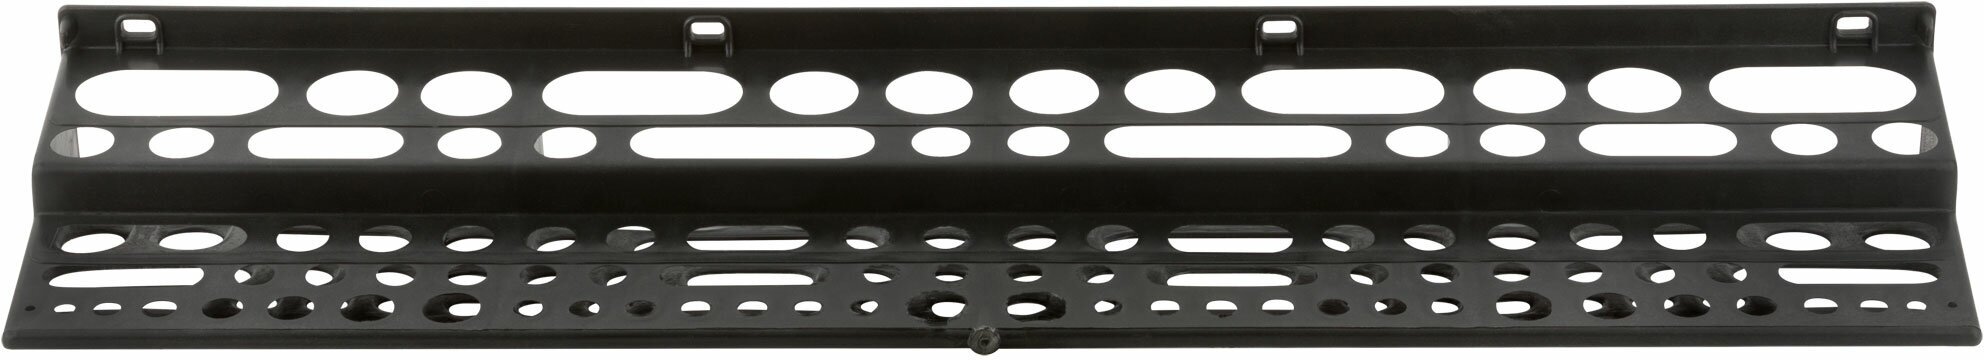 Полка для инструмента пластиковая черная 96 отверстий 610х150 мм (65704)